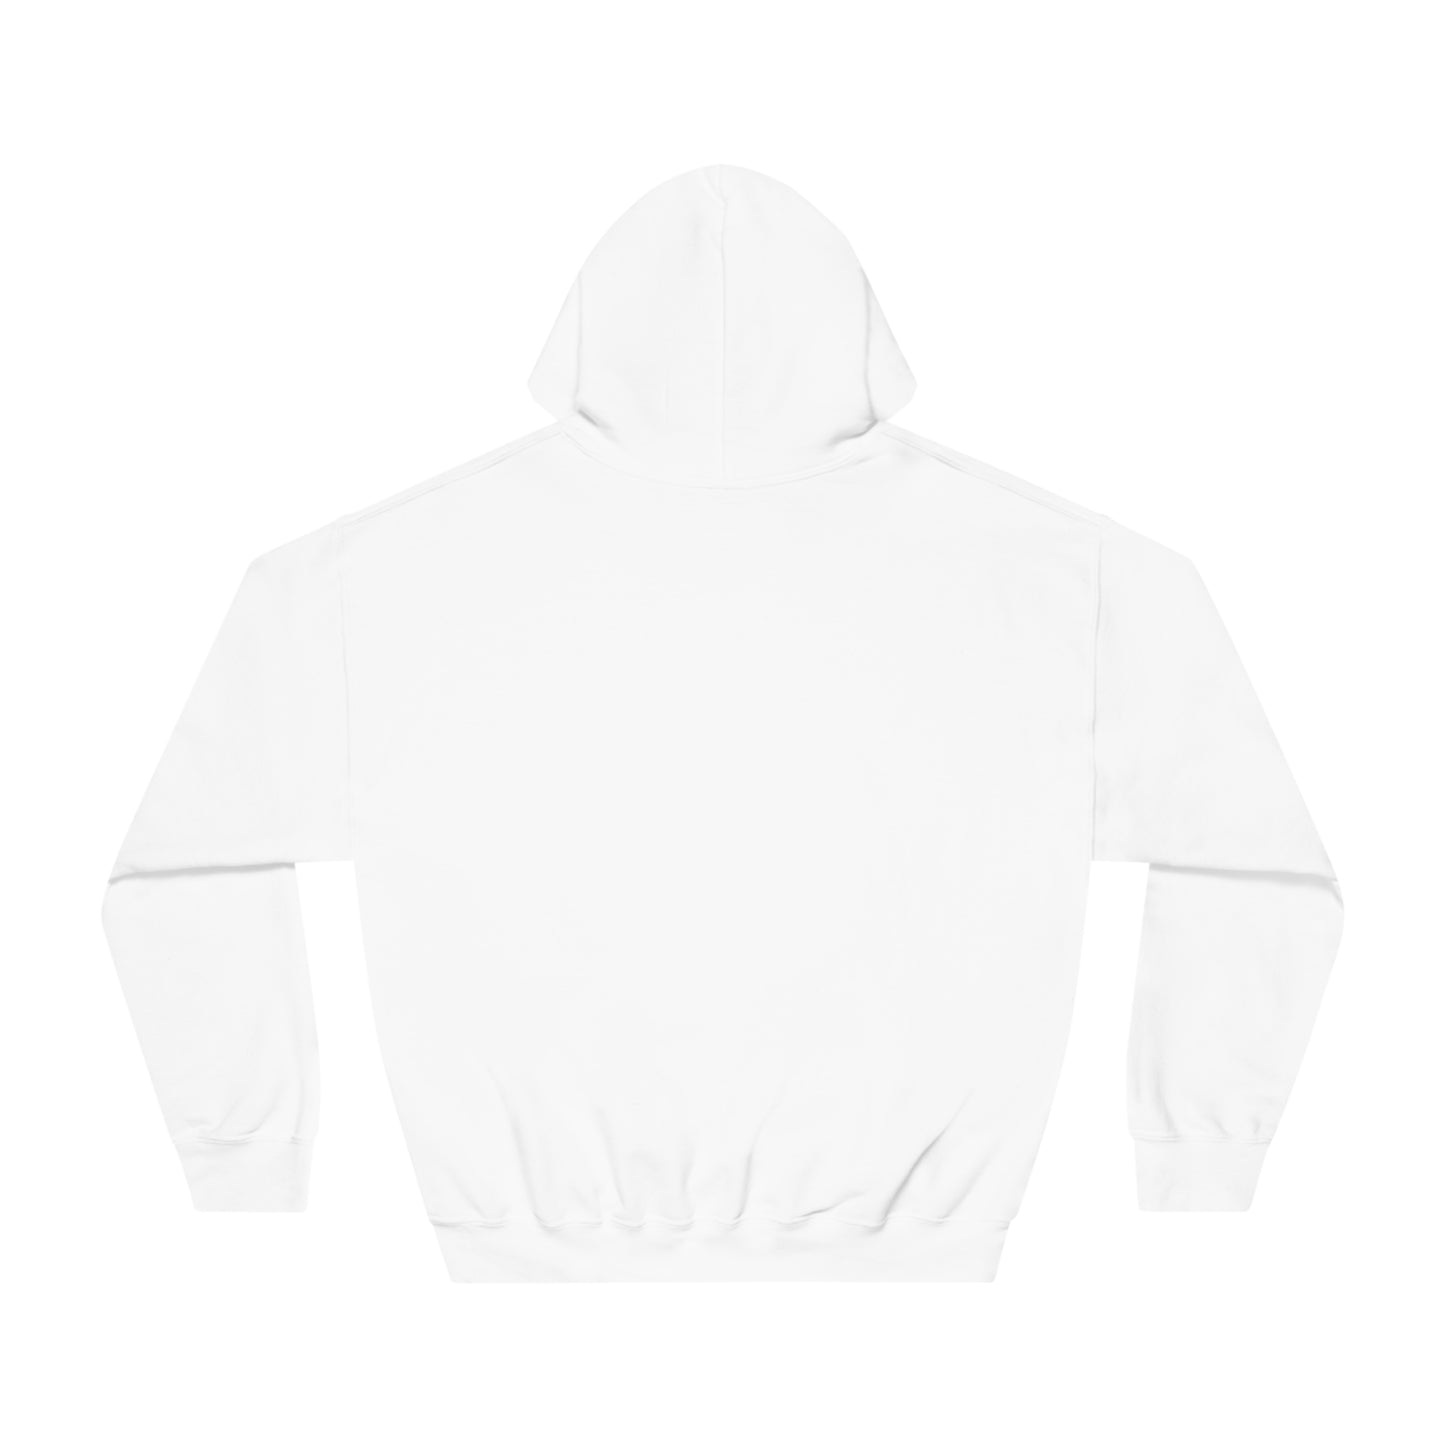 Valentine Sweatshirt for Her and Him, Unisex DryBlend® Hooded Sweatshirt, Valentine's Gift